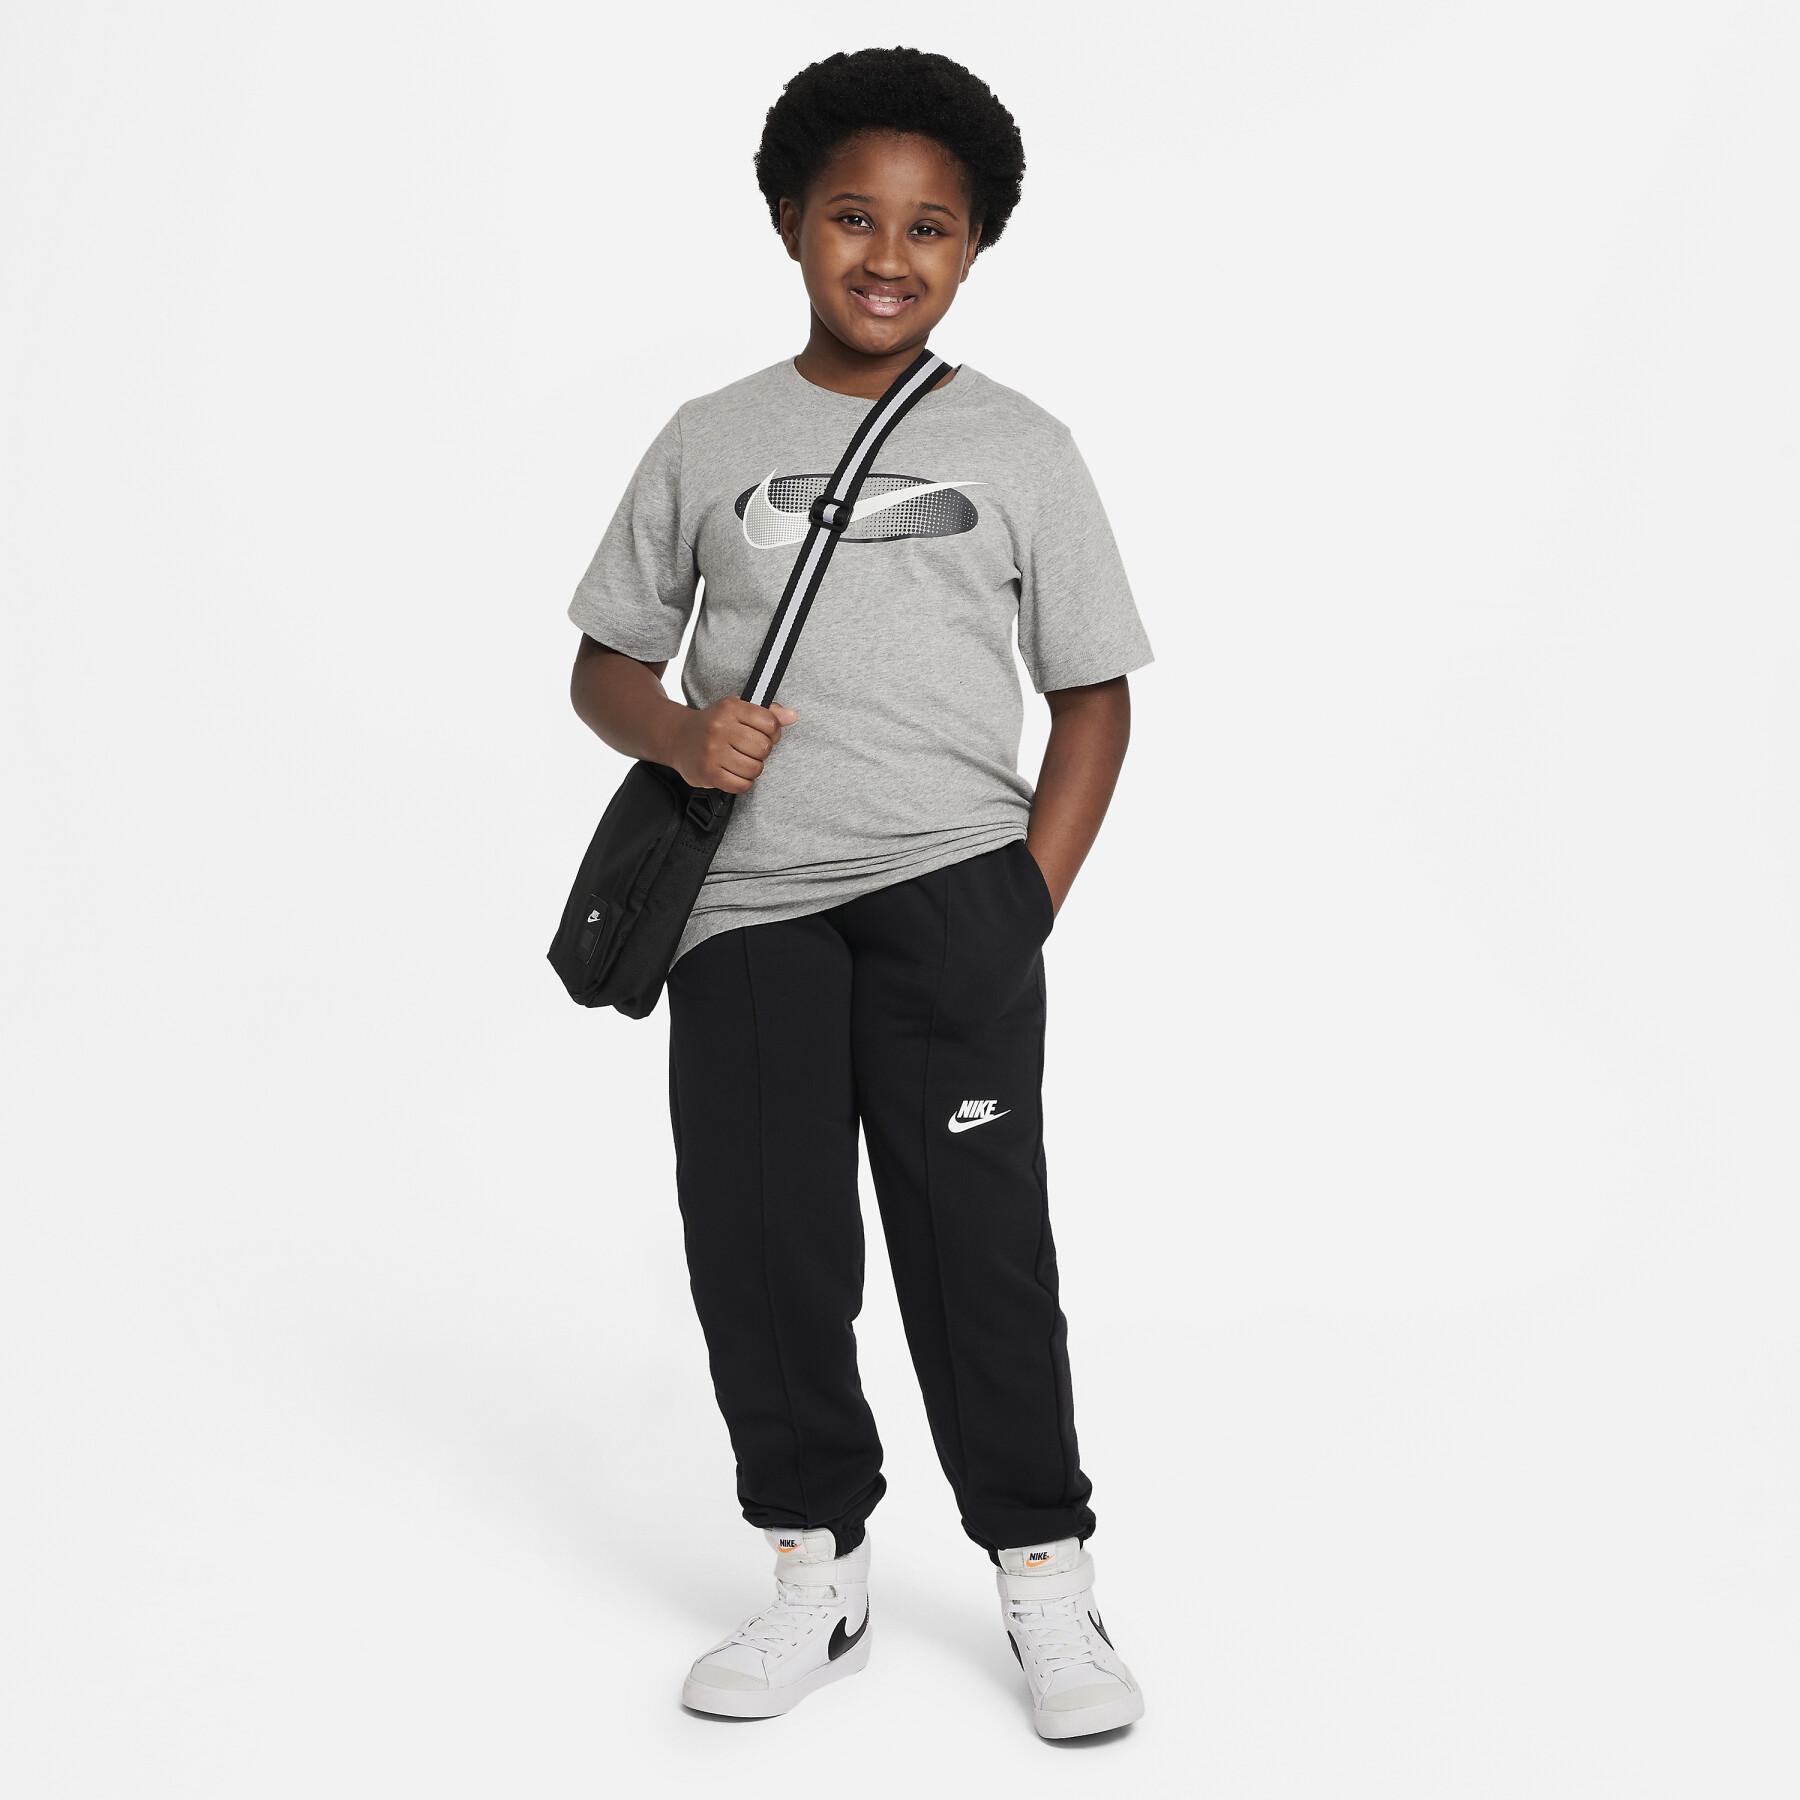 Camiseta infantil Nike Core Brandmark 2